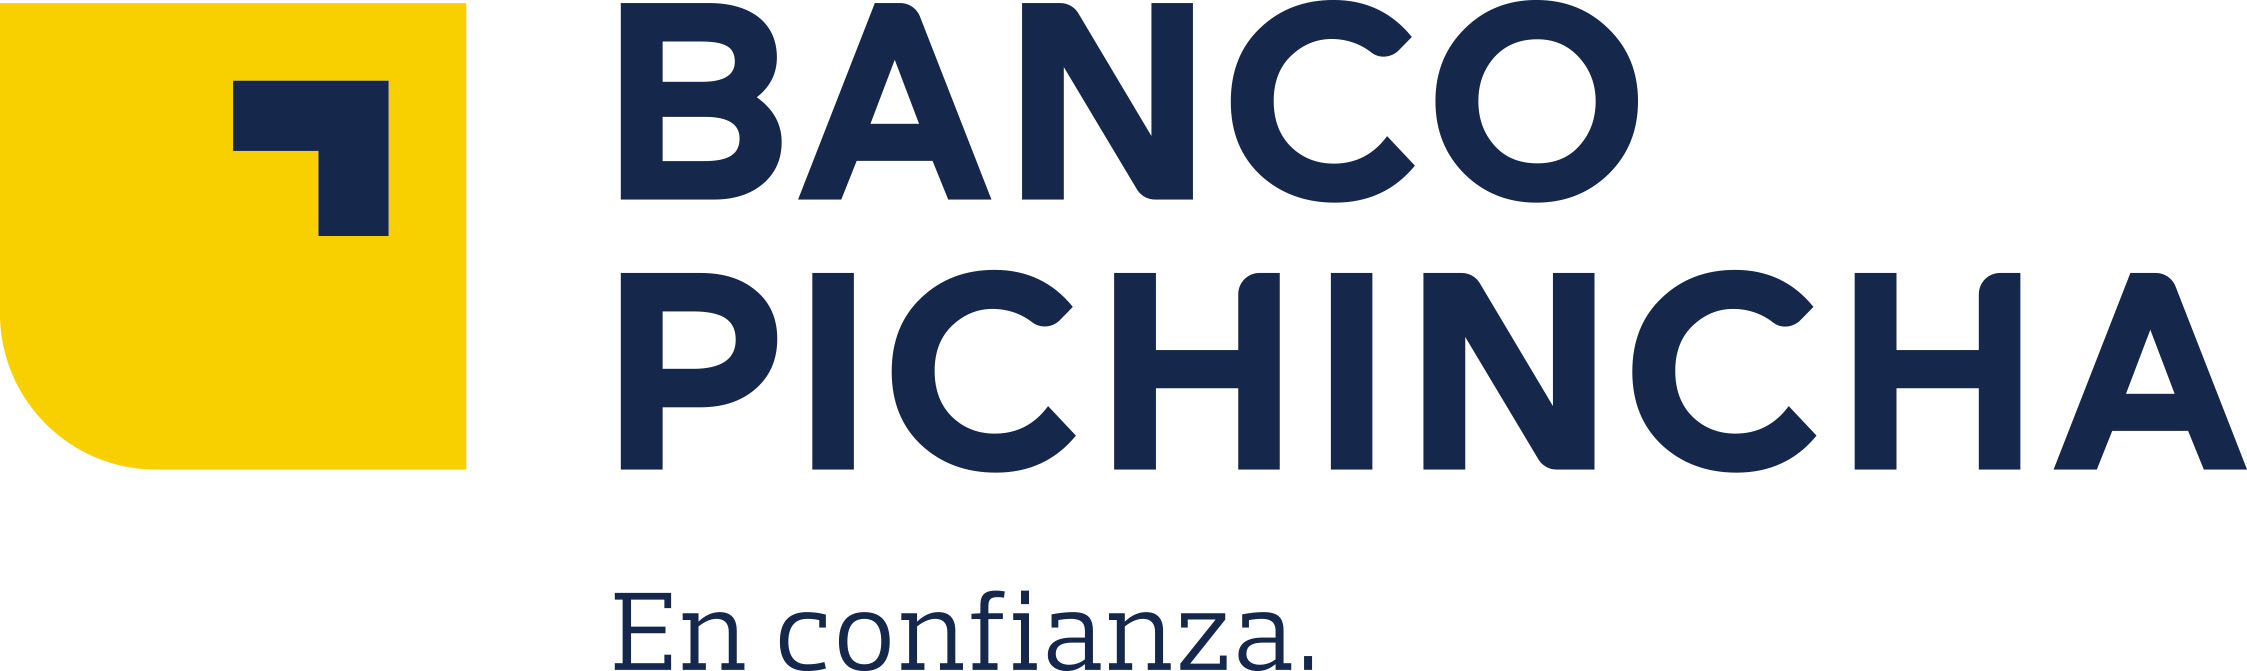 Pichincha